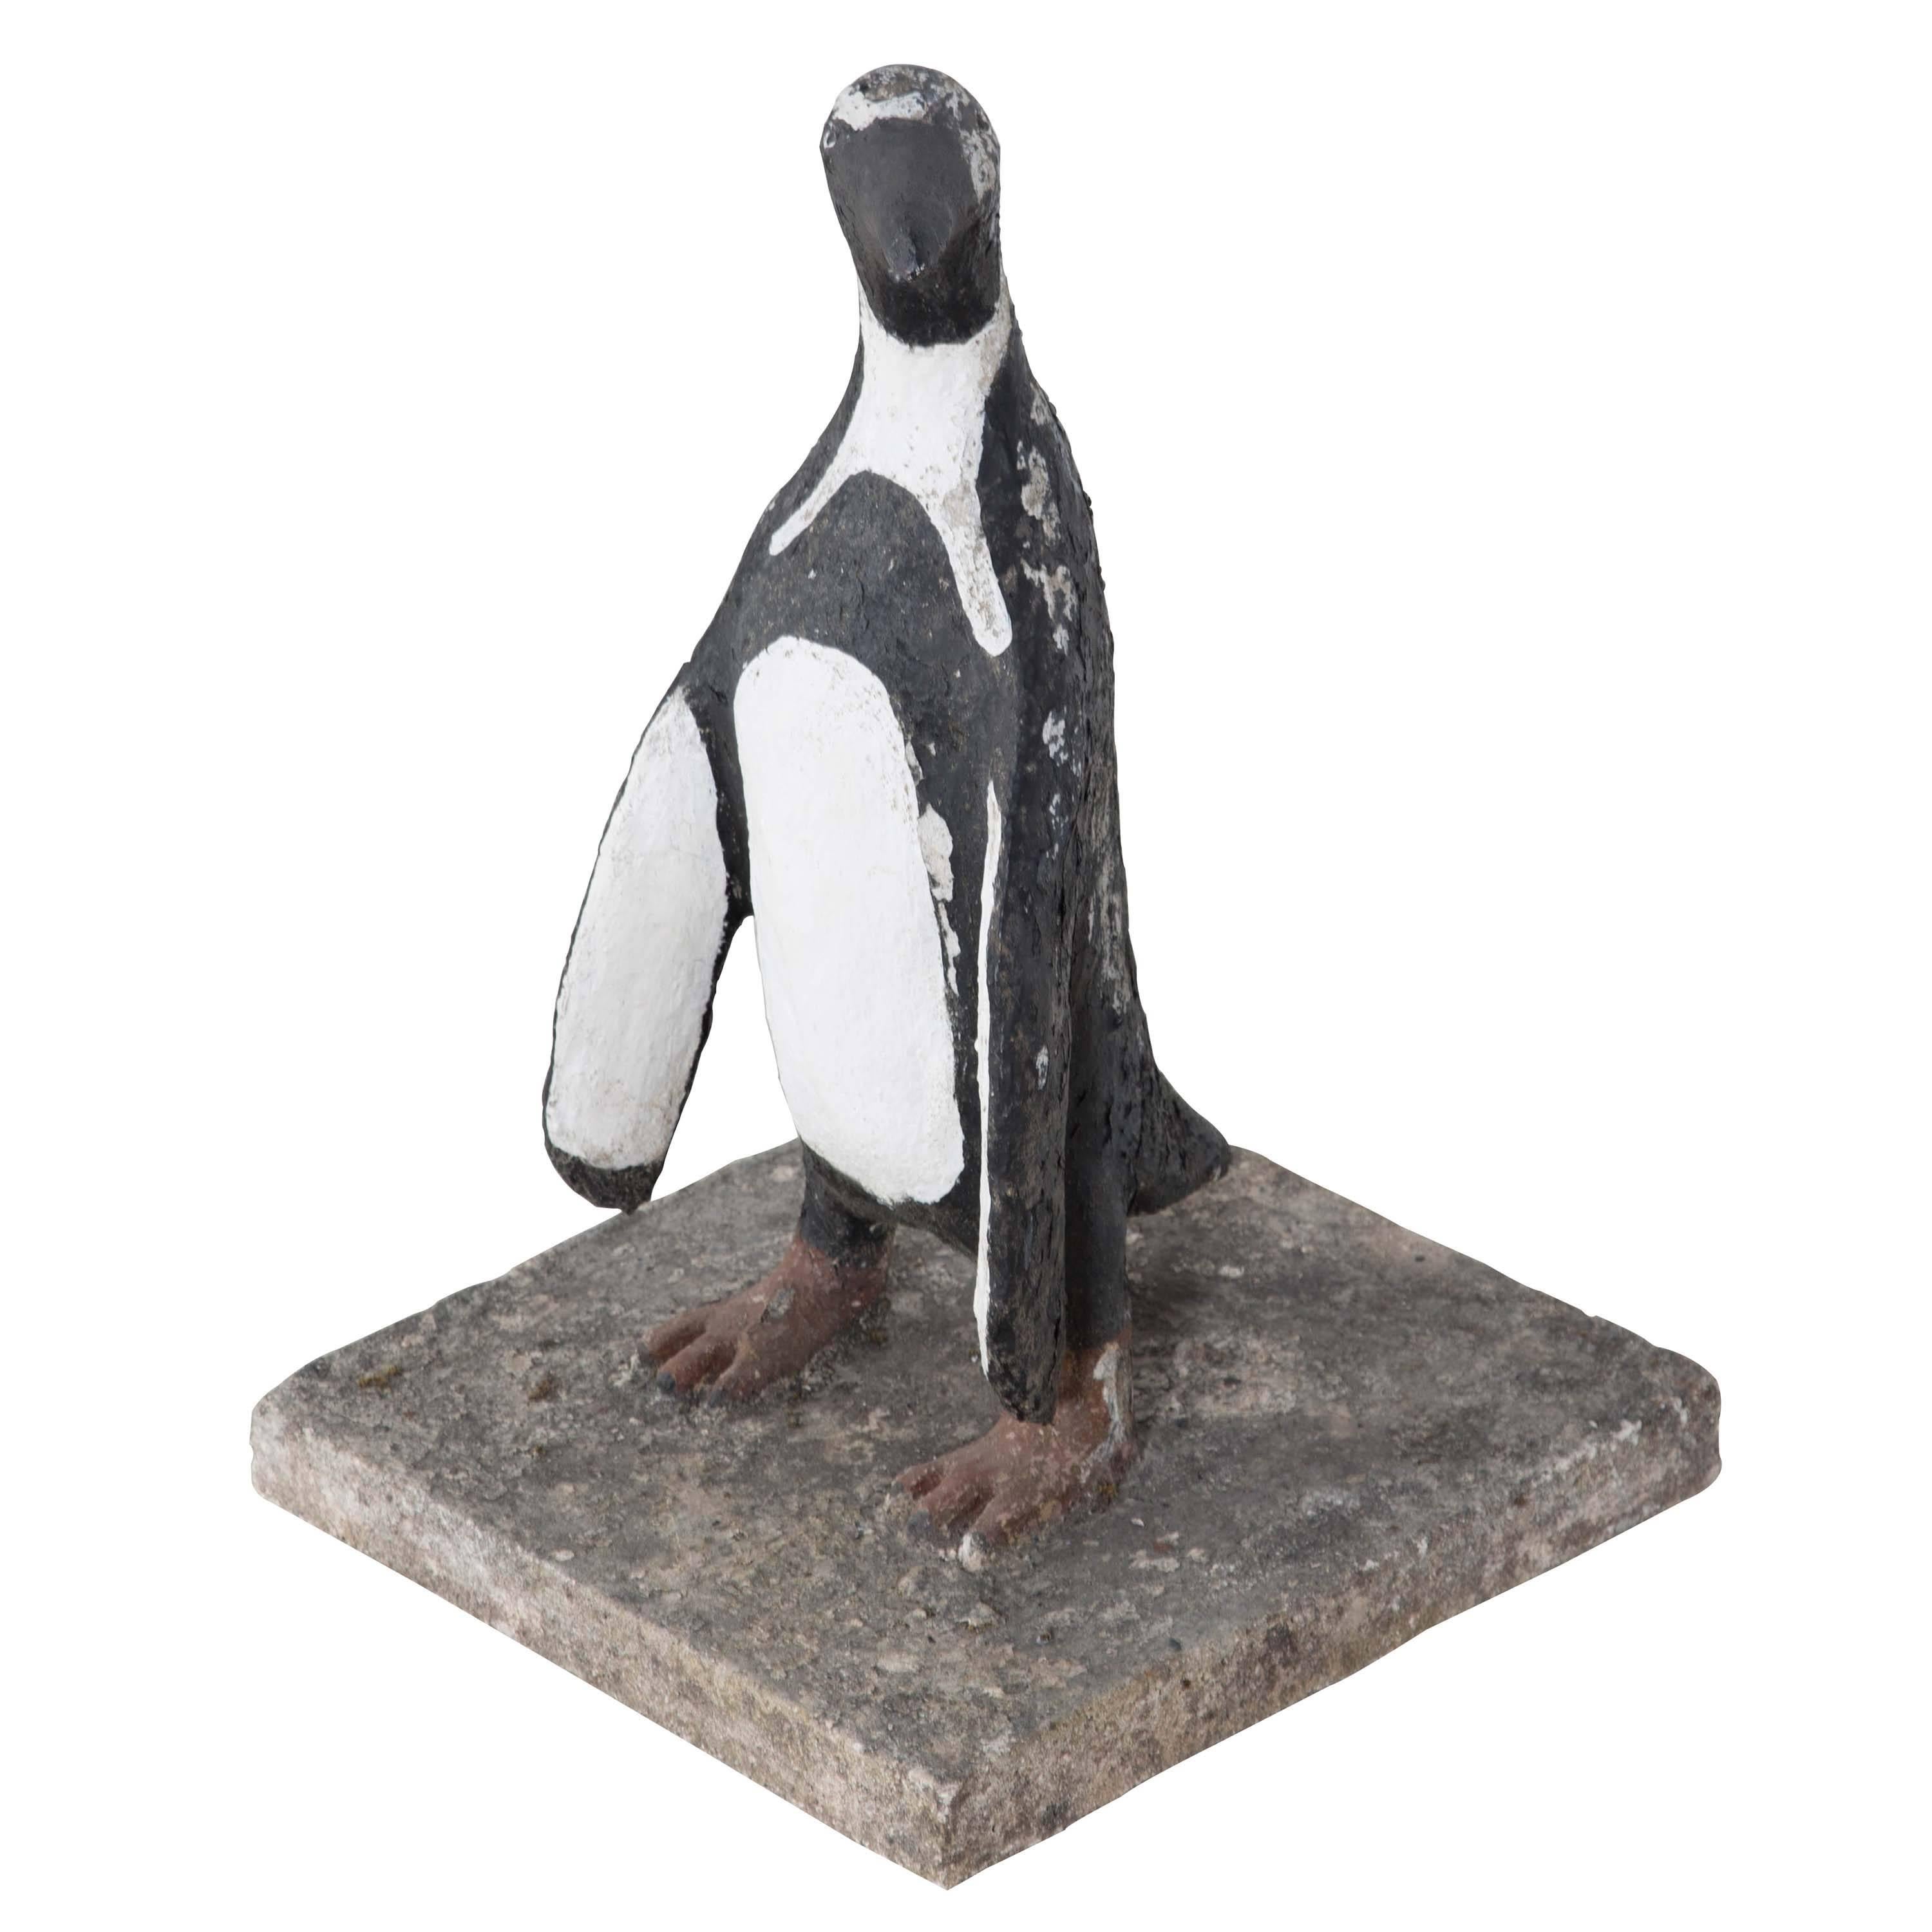 Fun decorative painted penguin on concrete base.